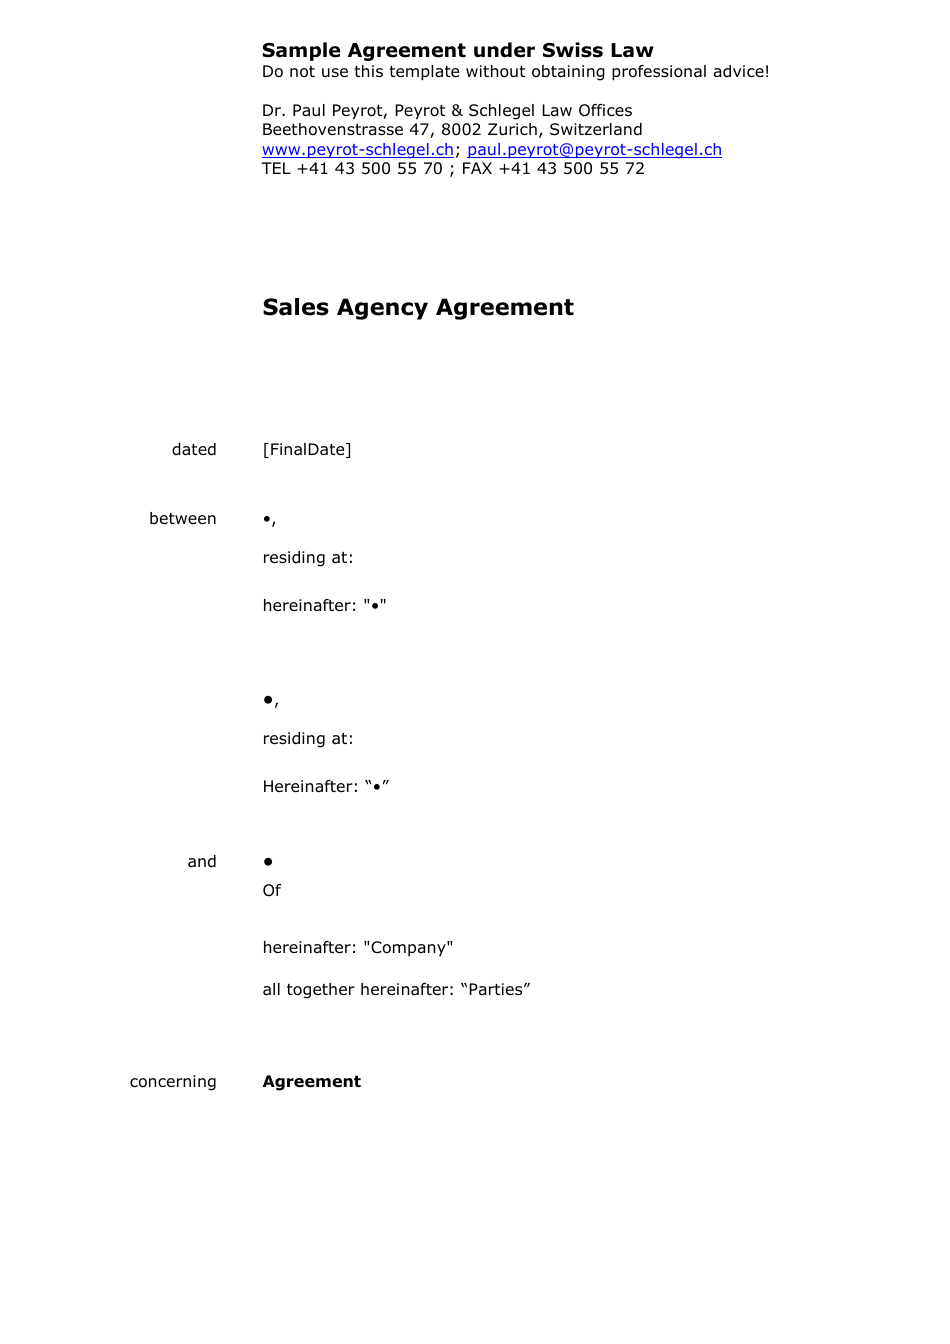 Sample Agreement Under Swiss Law - Canton of Zurich, Switzerland, Page 1